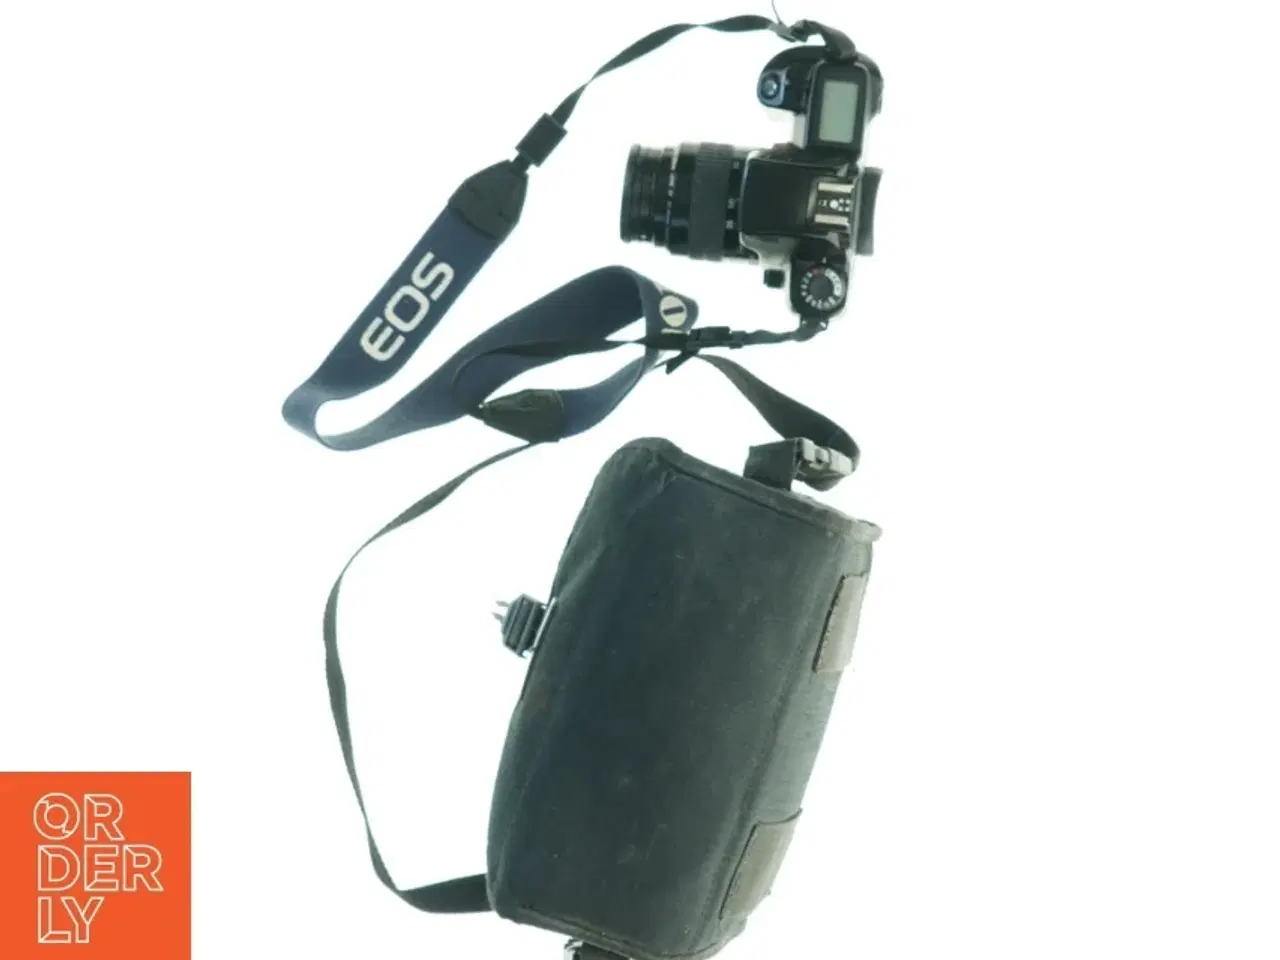 Billede 2 - Canon 1000F kamera med taske (str. 23 x 12)